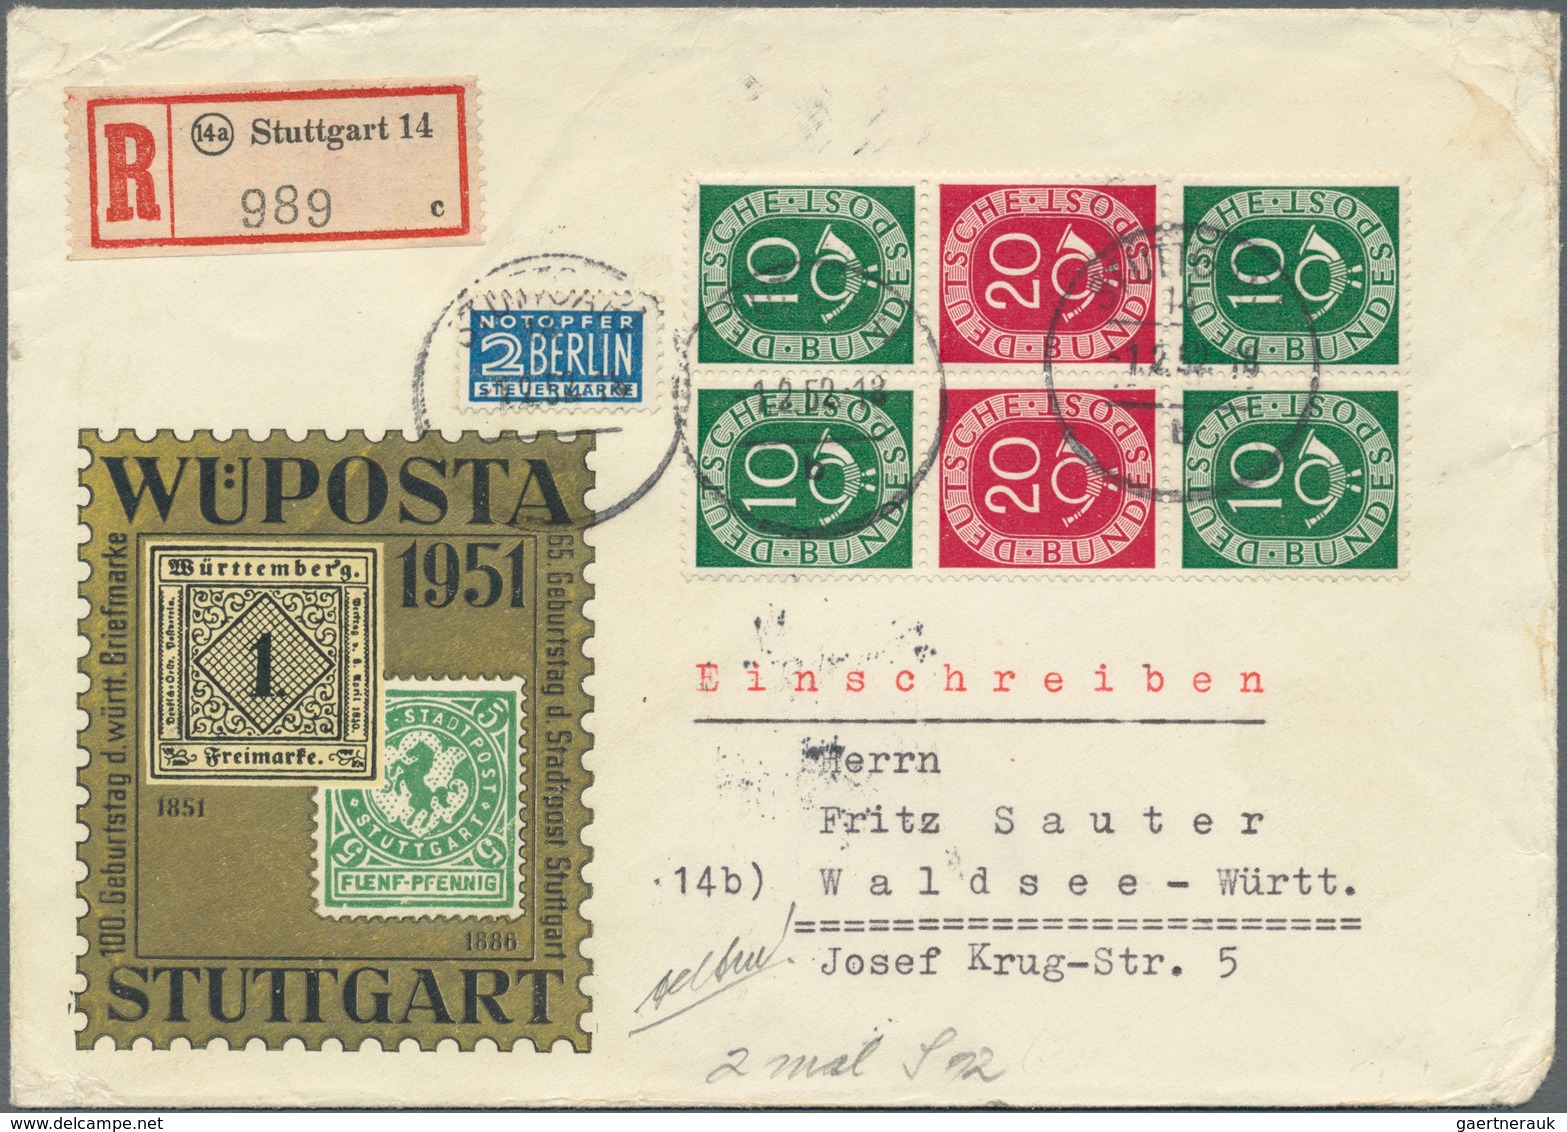 Bundesrepublik Deutschland: 1949/1959, gehaltvolle und nahezu komplette Sammlung mit Frankaturen von